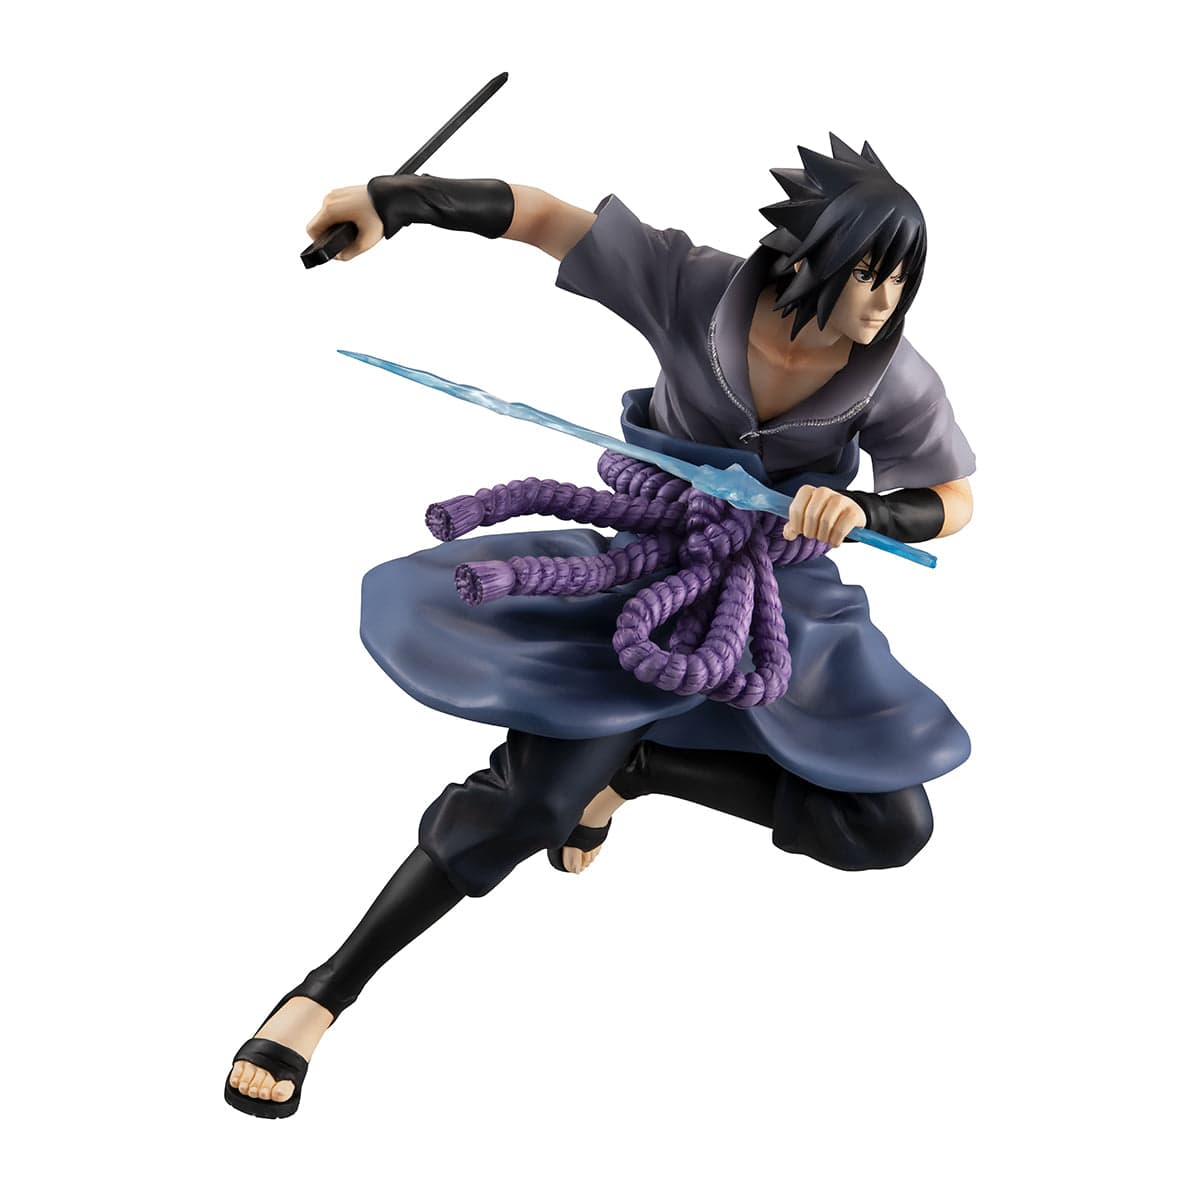 Naruto Shippuden - Figurine Sasuke Special Version - Ichiban Kuji